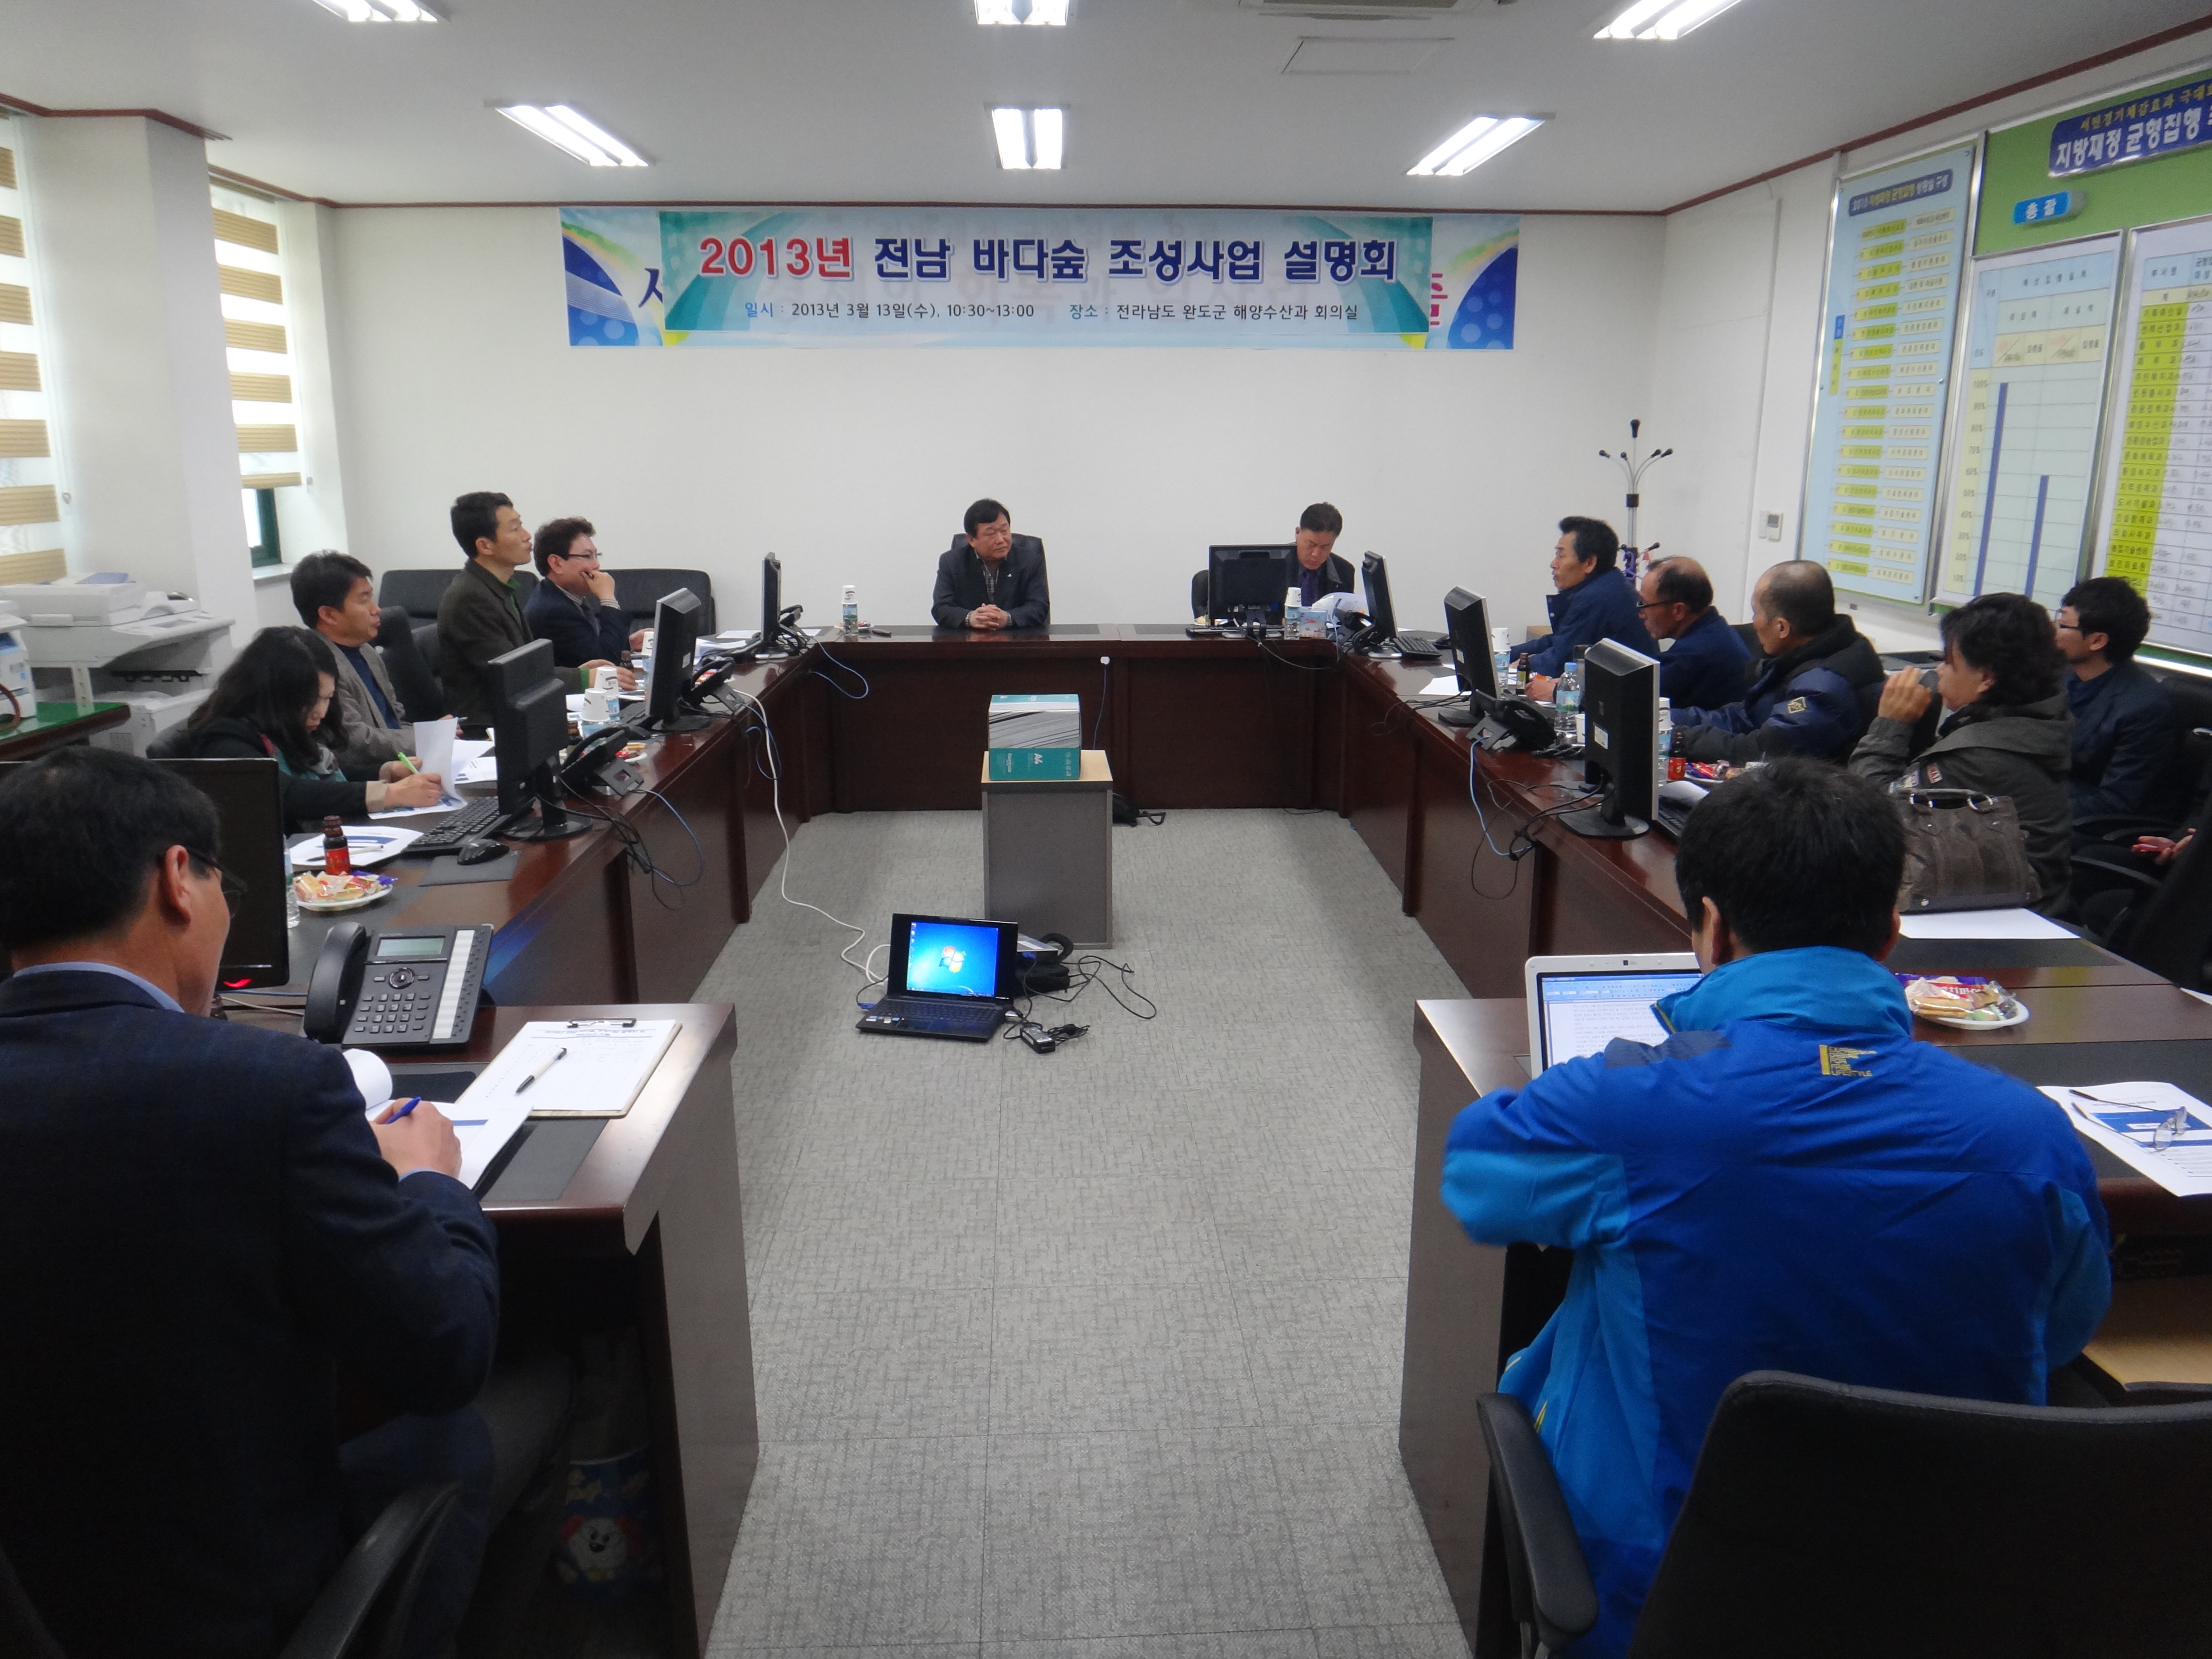 2013년 전남 바다숲조성사업 설명회 개최